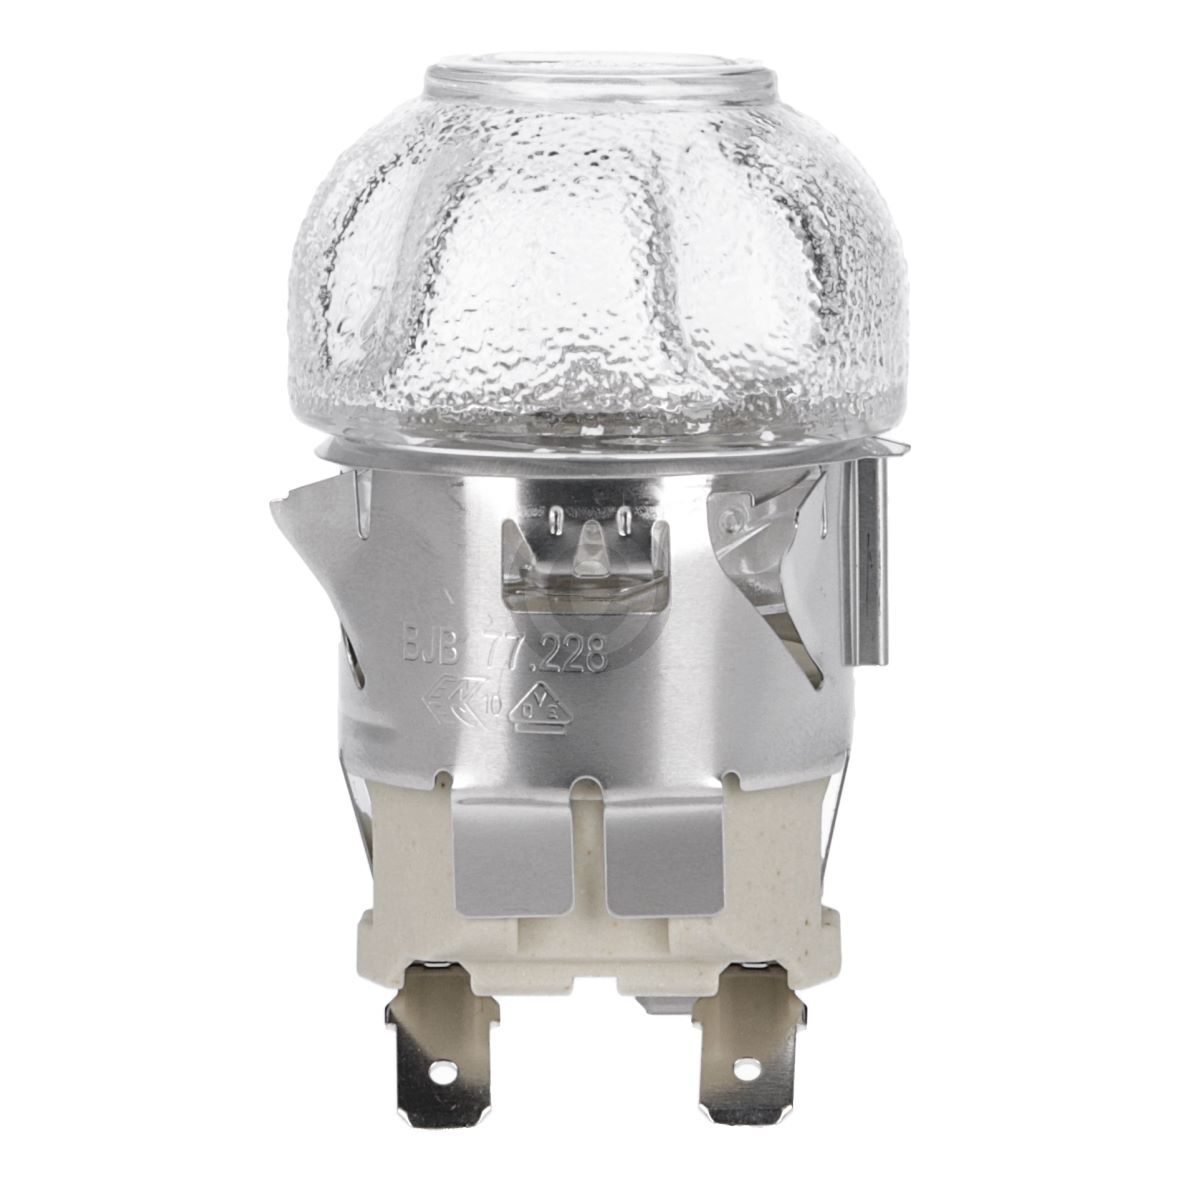 Speziallampe Lampe Leuchte Glühbirne Backofen Ofen Herd E14 25W 240V bis  300°C